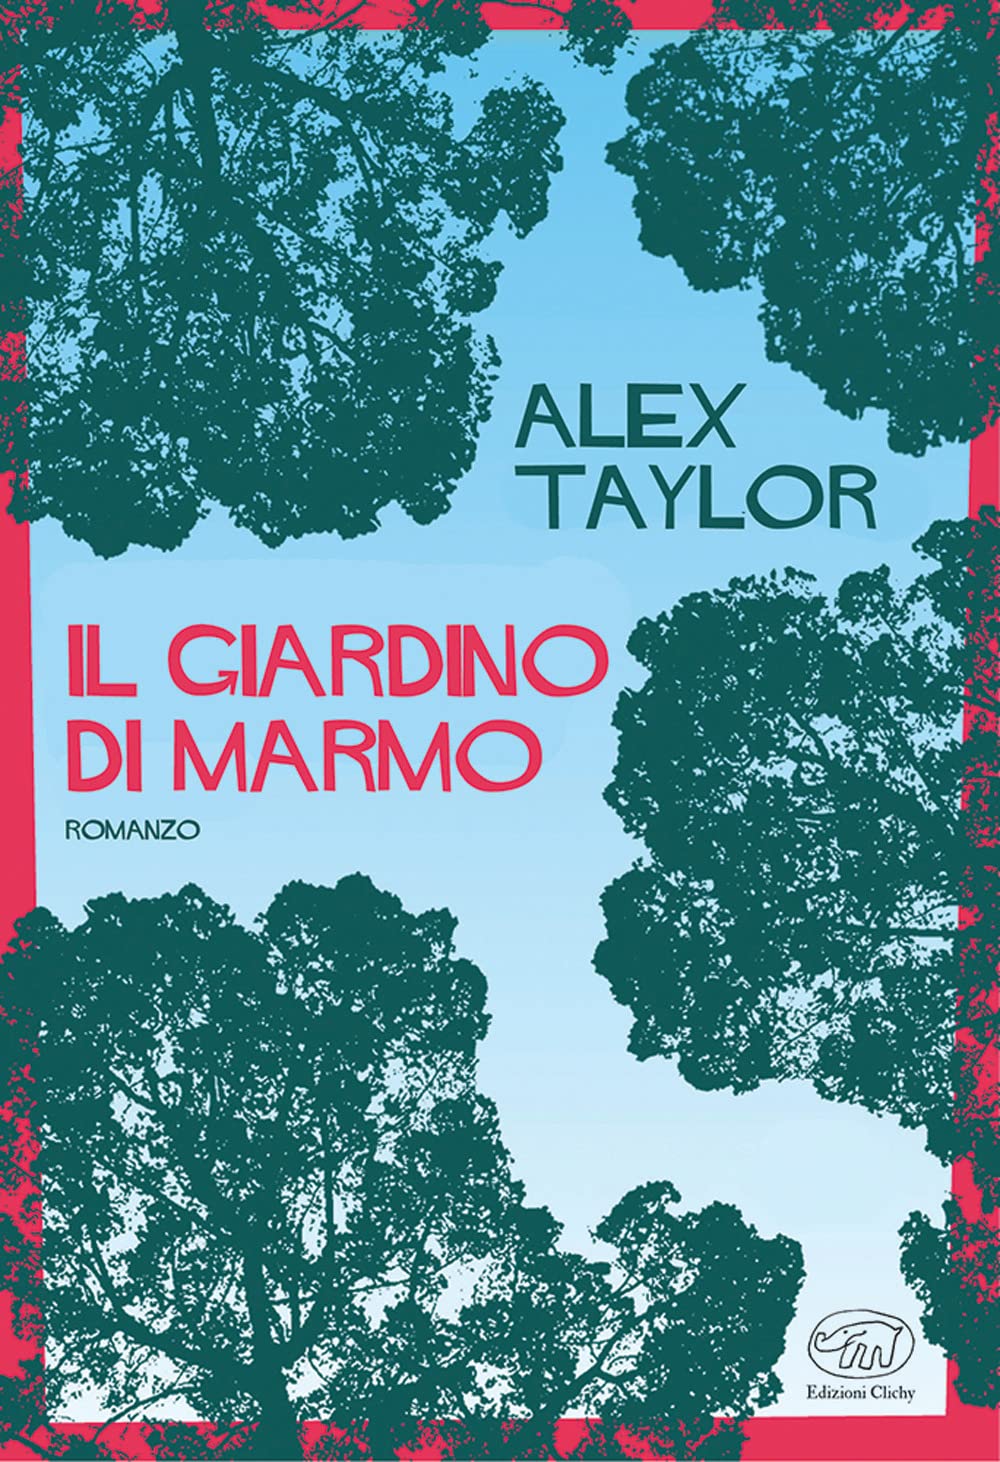 Il giardino di marmo - Alex Taylor - Edizioni Clichy